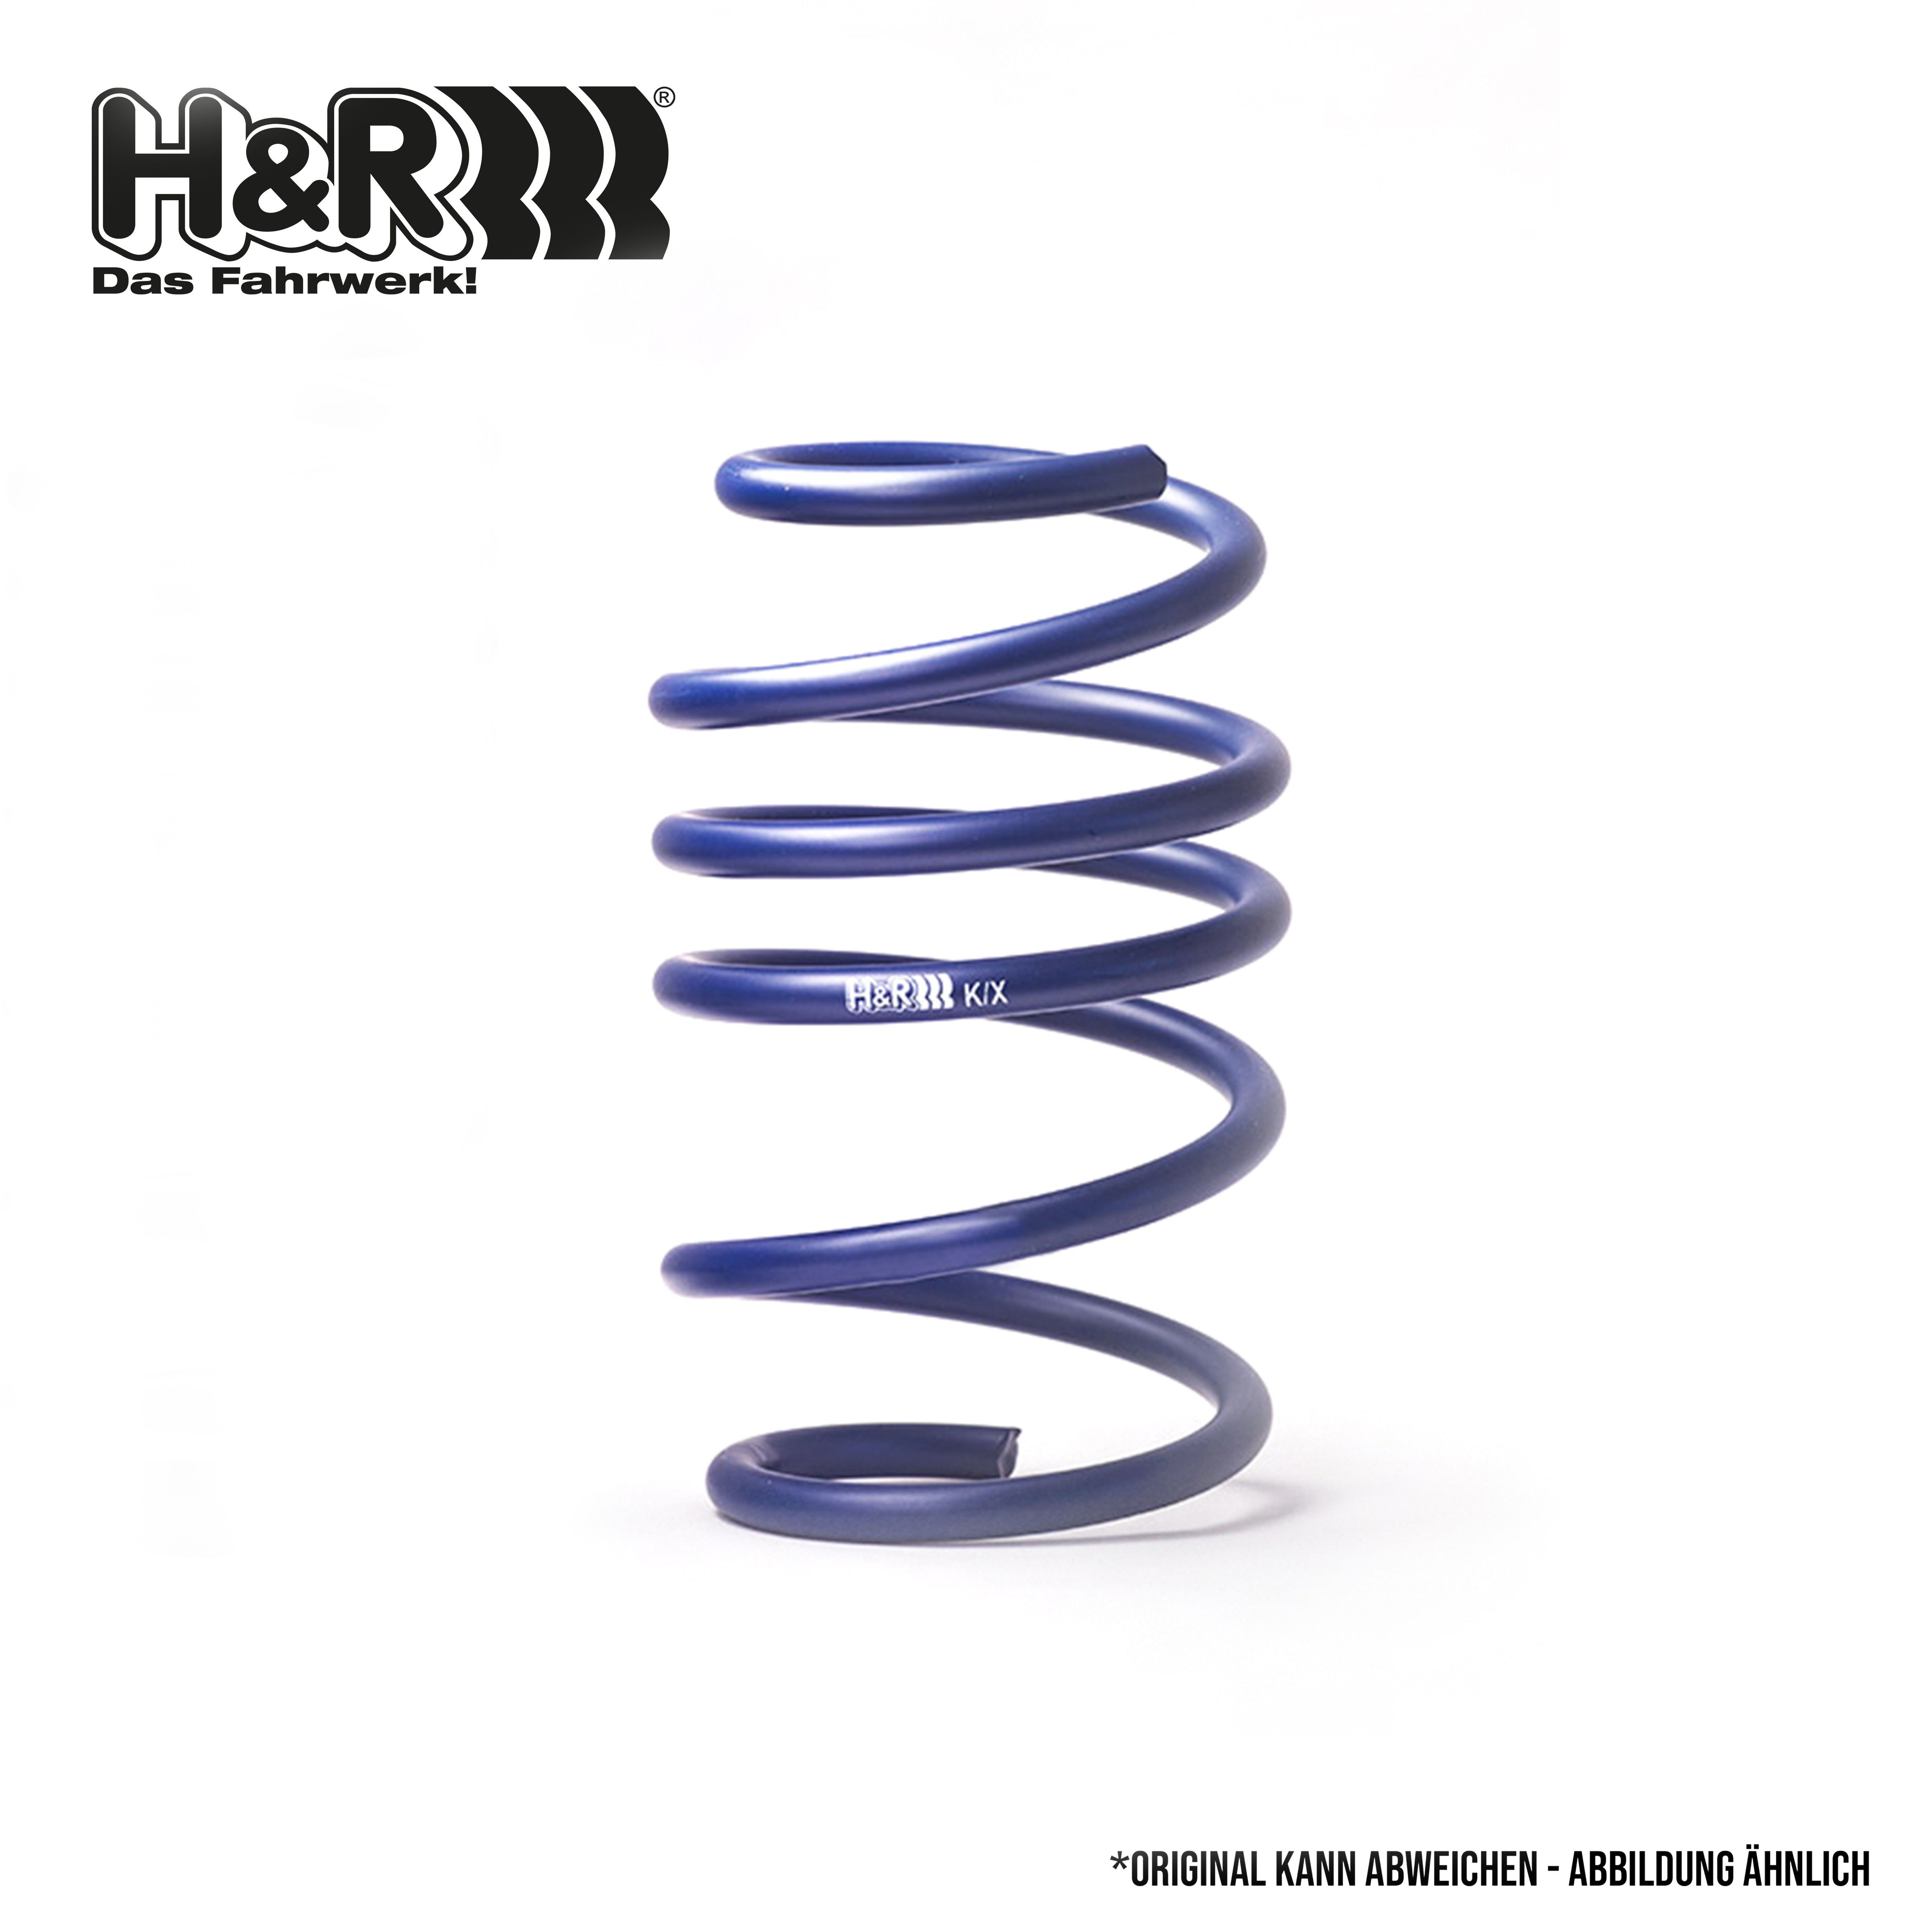 H&R Rear Axle Spring 29043HA1 buy